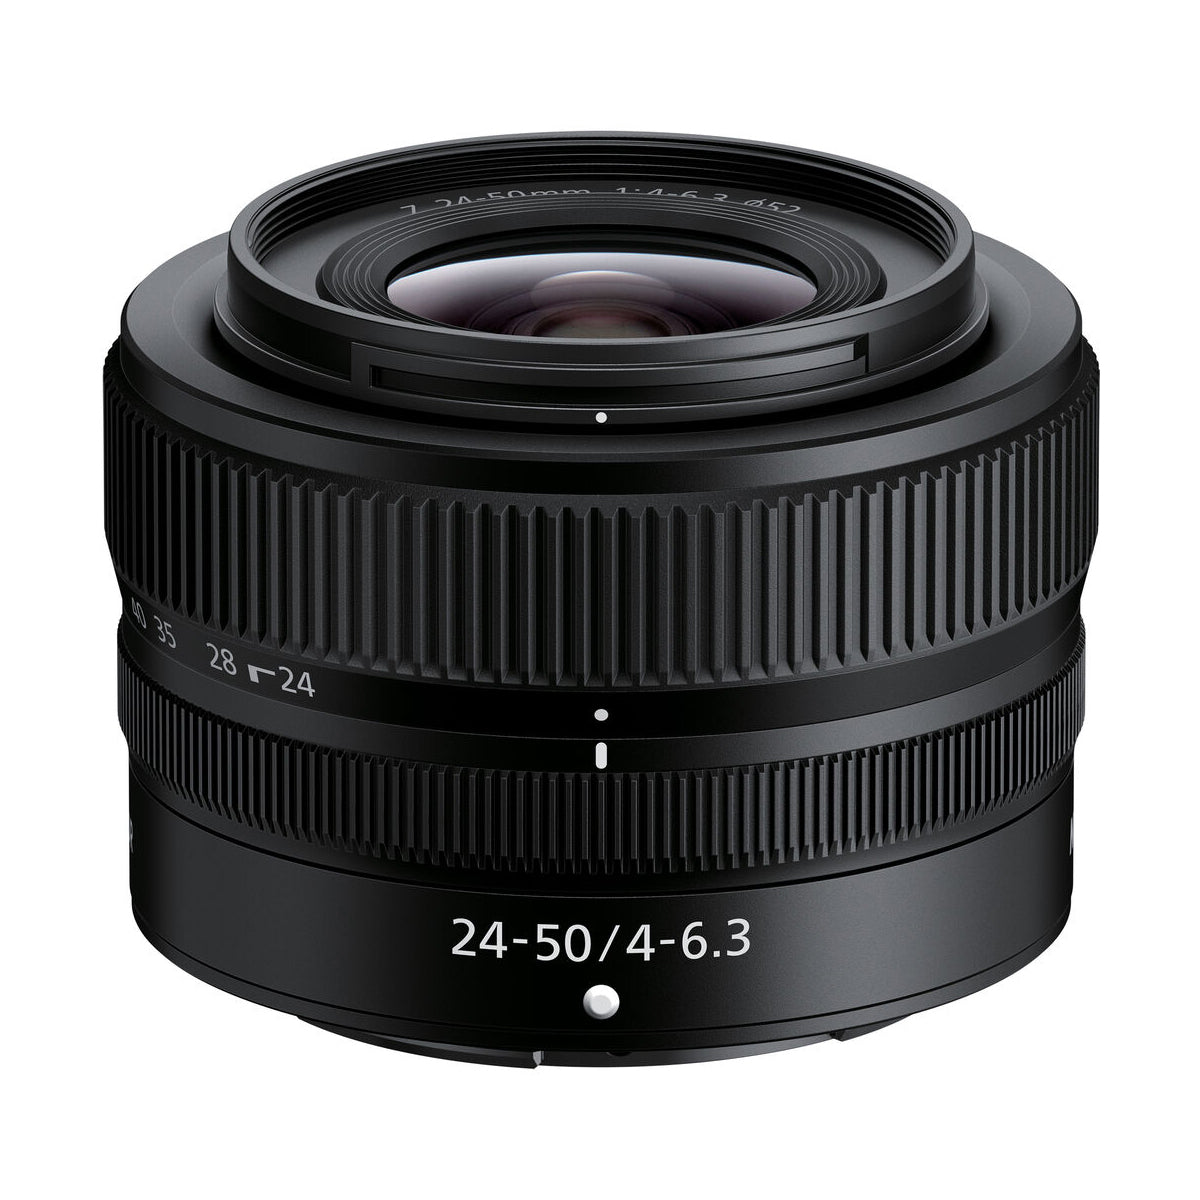 Nikon Z 24-50mm f/4-6.3 Lens *OPEN BOX*